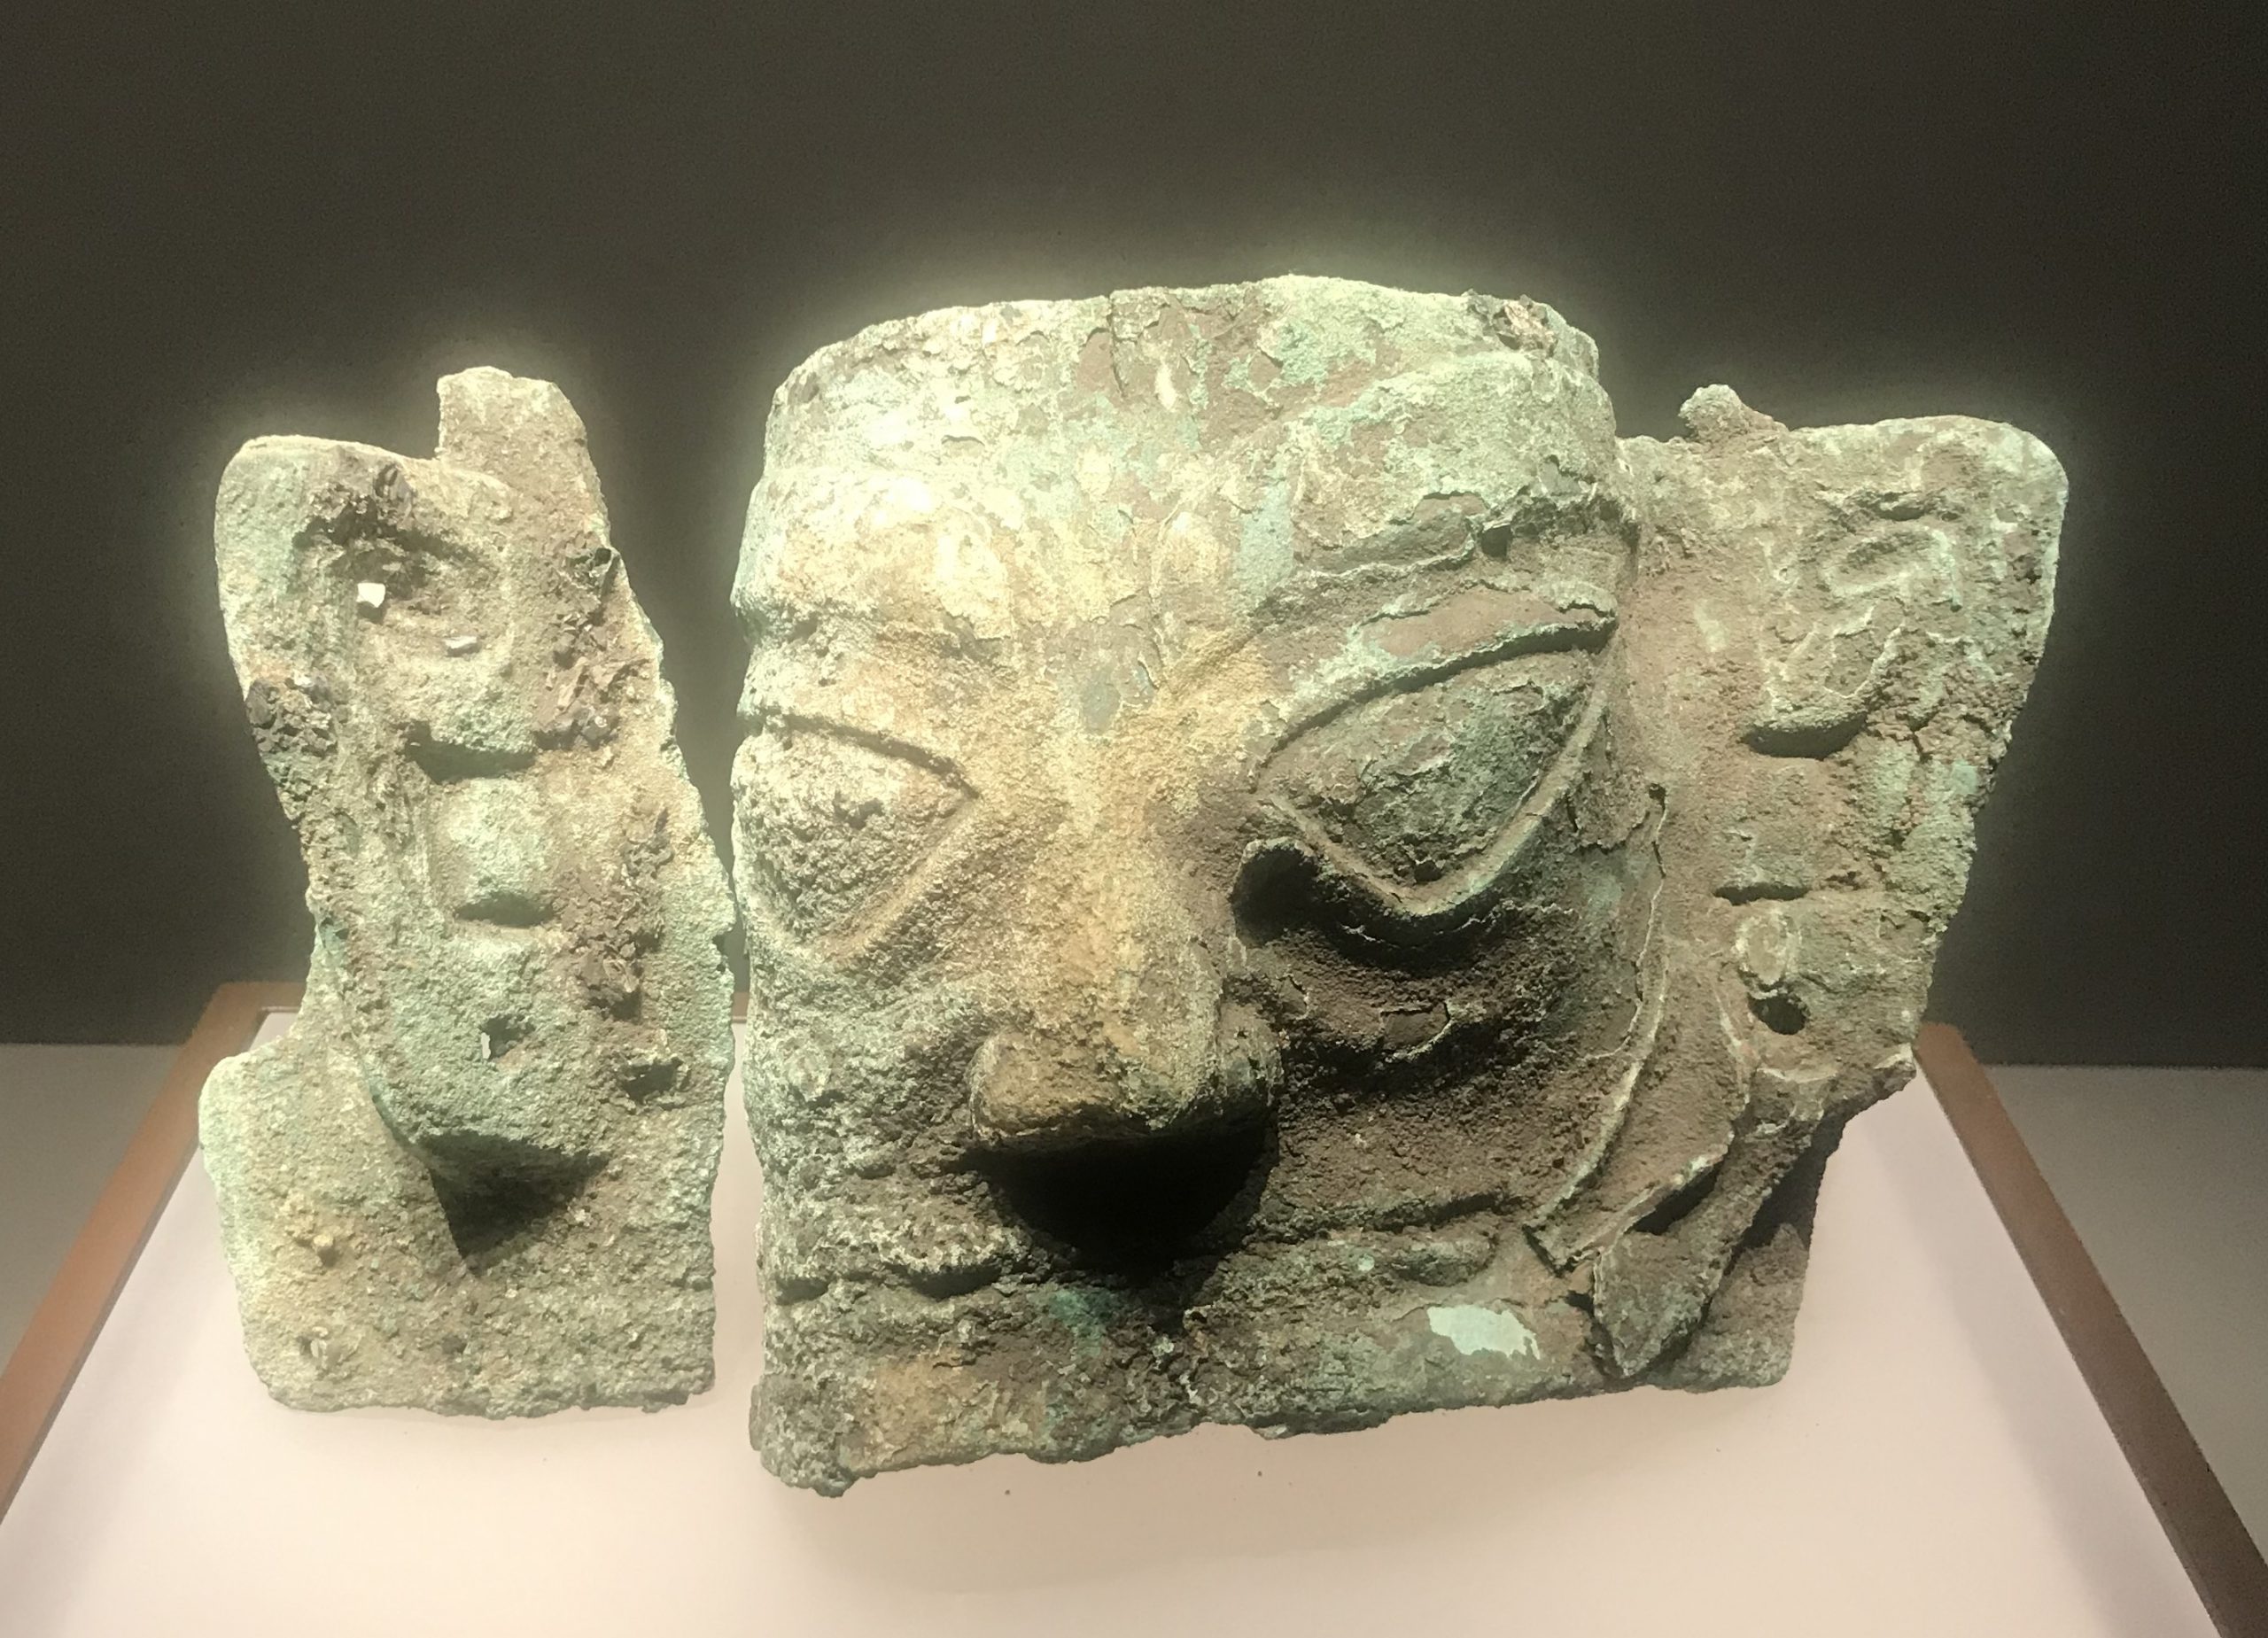  青銅人面具3-青銅器館-三星堆博物館-広漢市-徳陽市-四川省